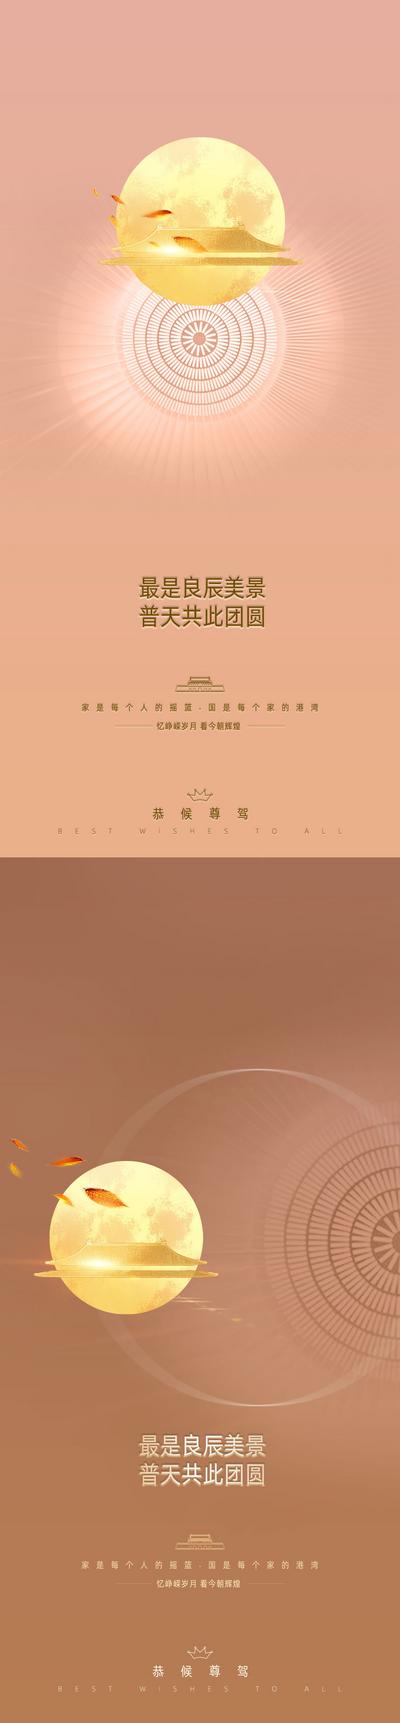 南门网 海报 中国传统节日 公历节日 国庆节 中秋节 简约 月亮 系列